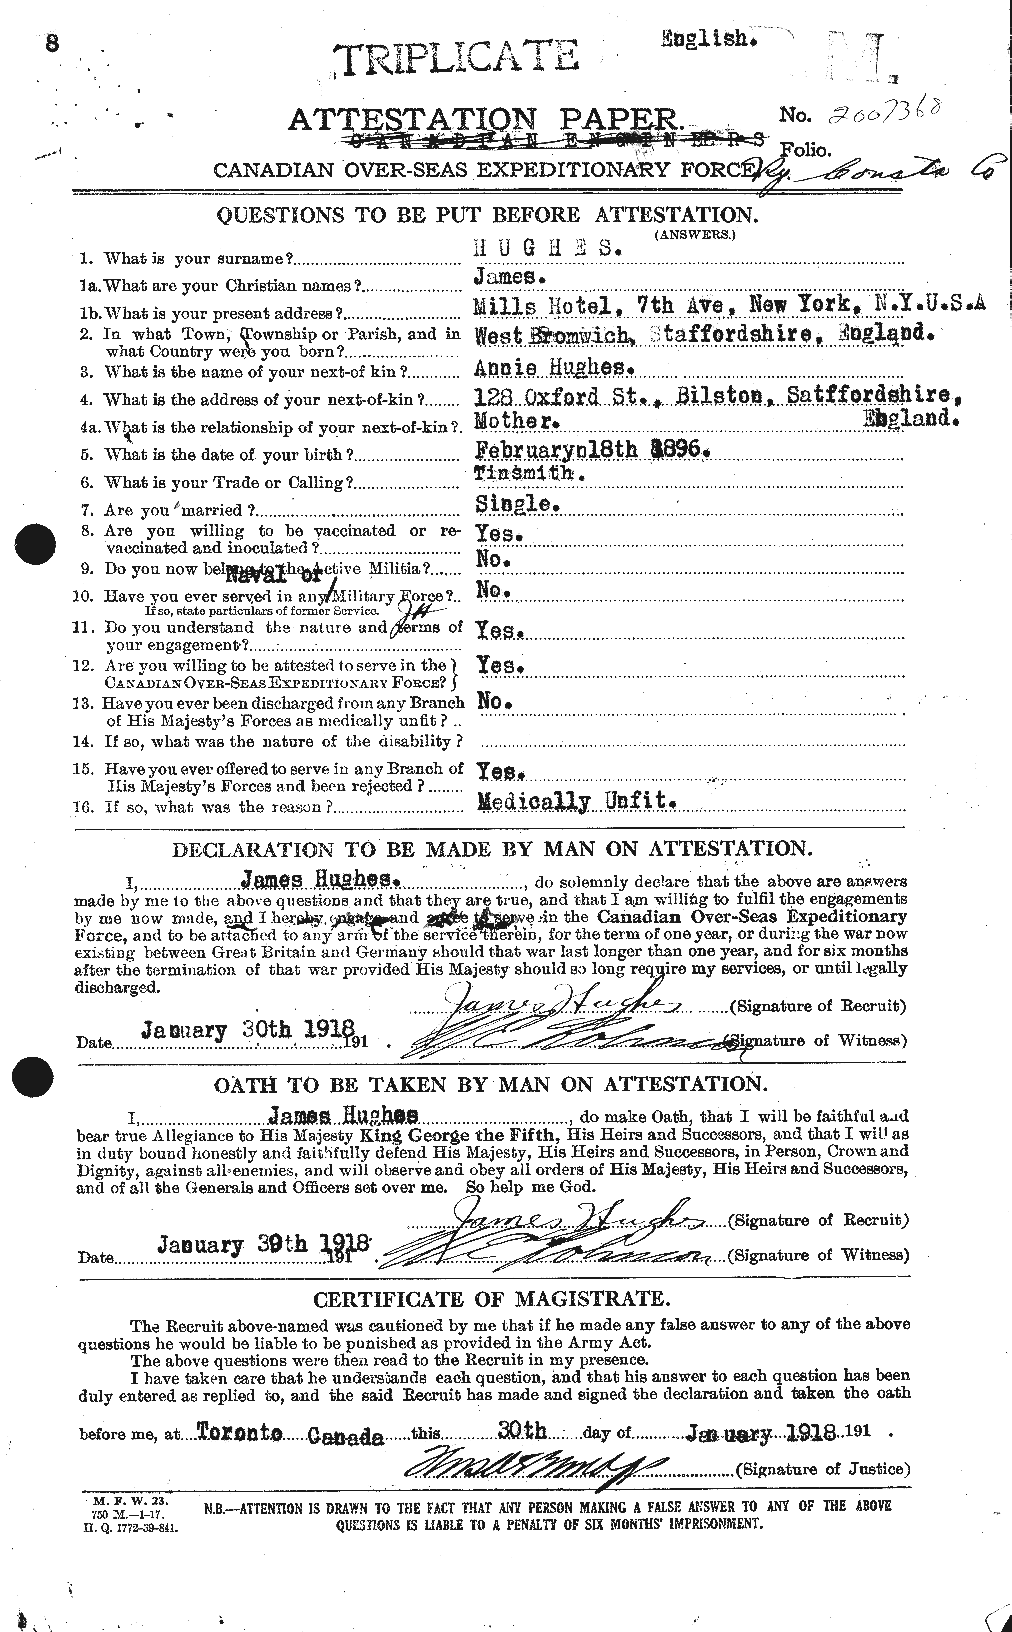 Dossiers du Personnel de la Première Guerre mondiale - CEC 403952a